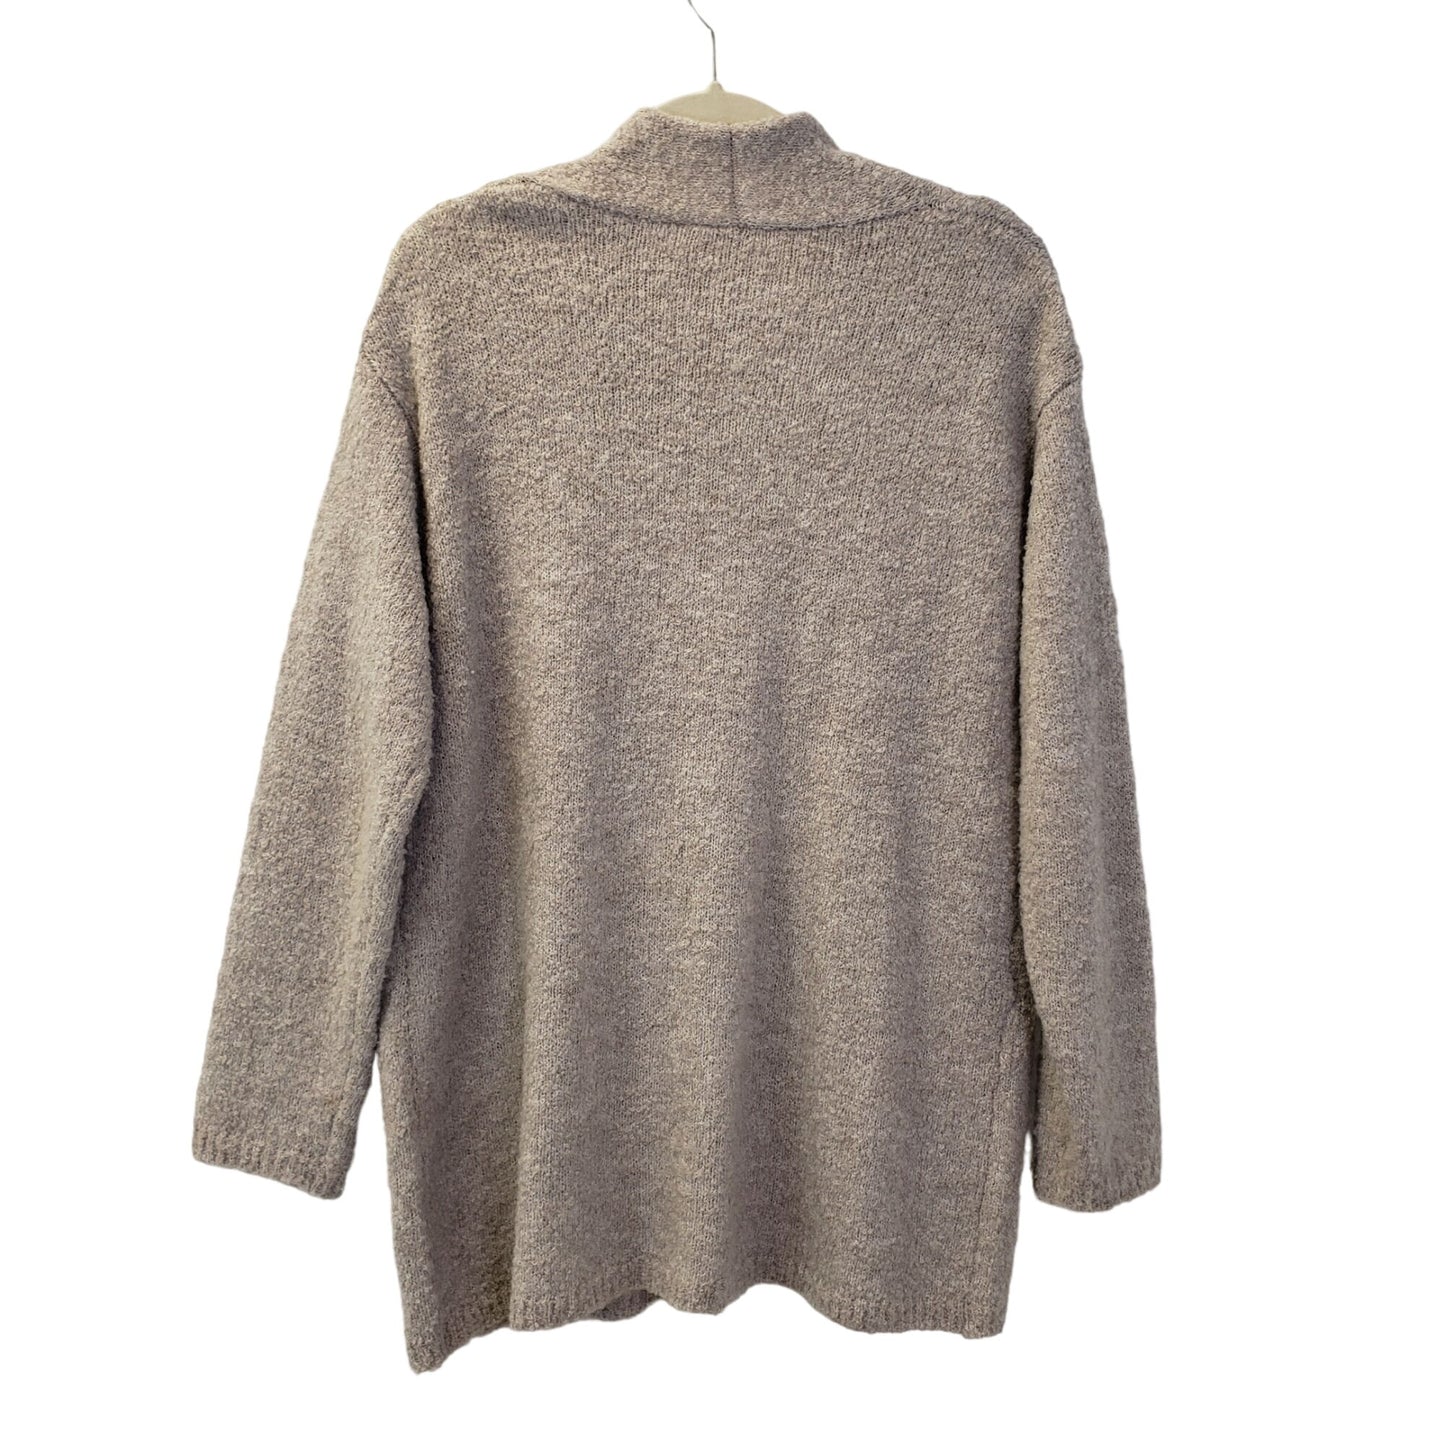 J. Jill Pure Jill Wool Blend Cardigan Sweater Size Medium